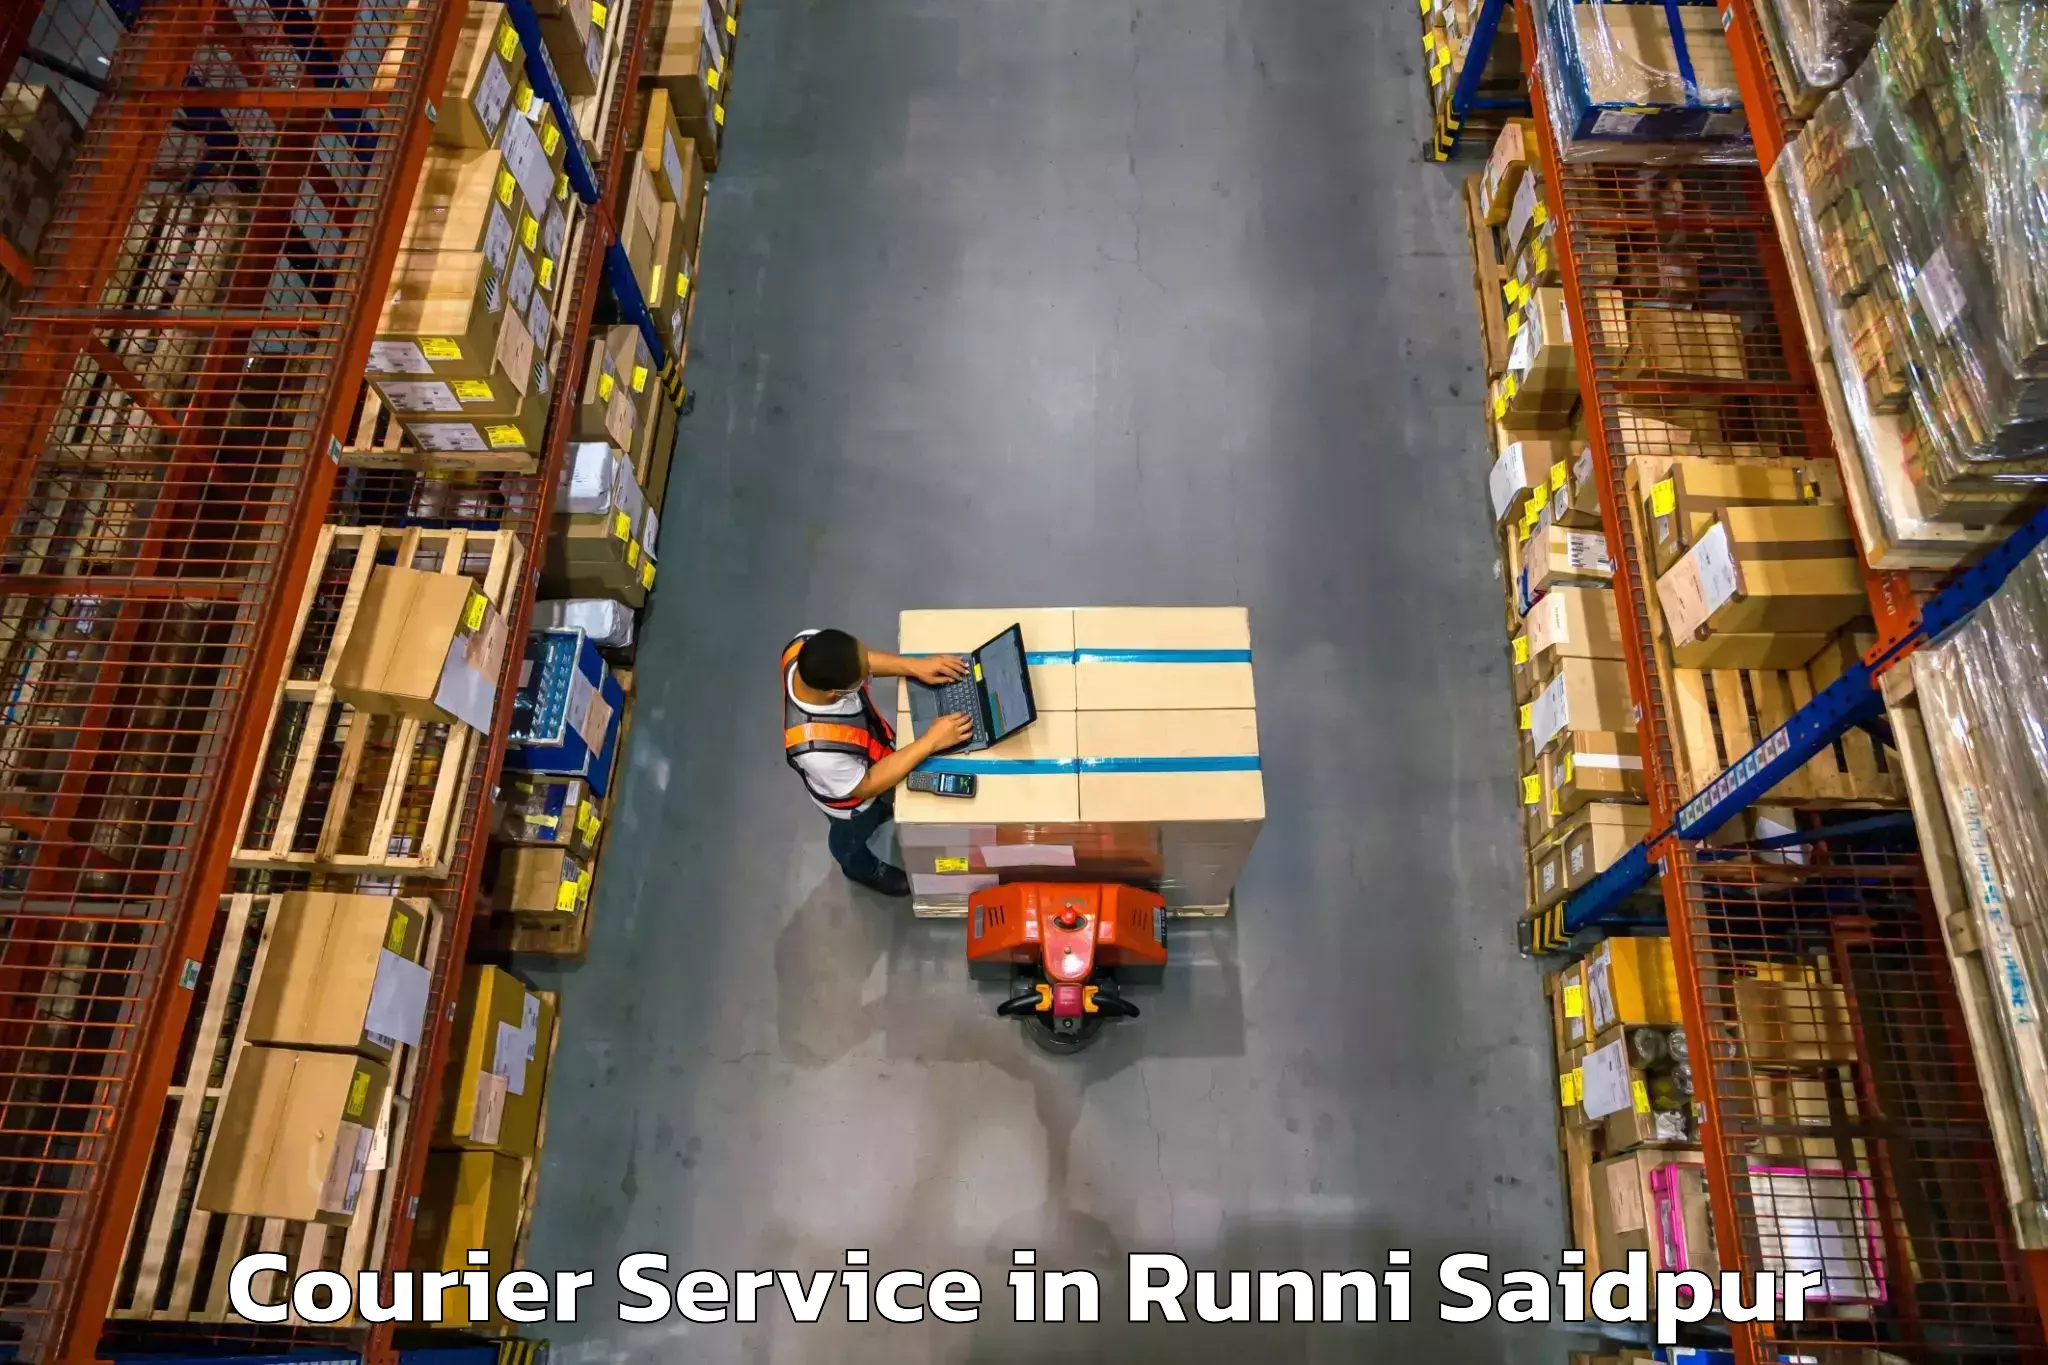 Fast delivery service in Runni Saidpur